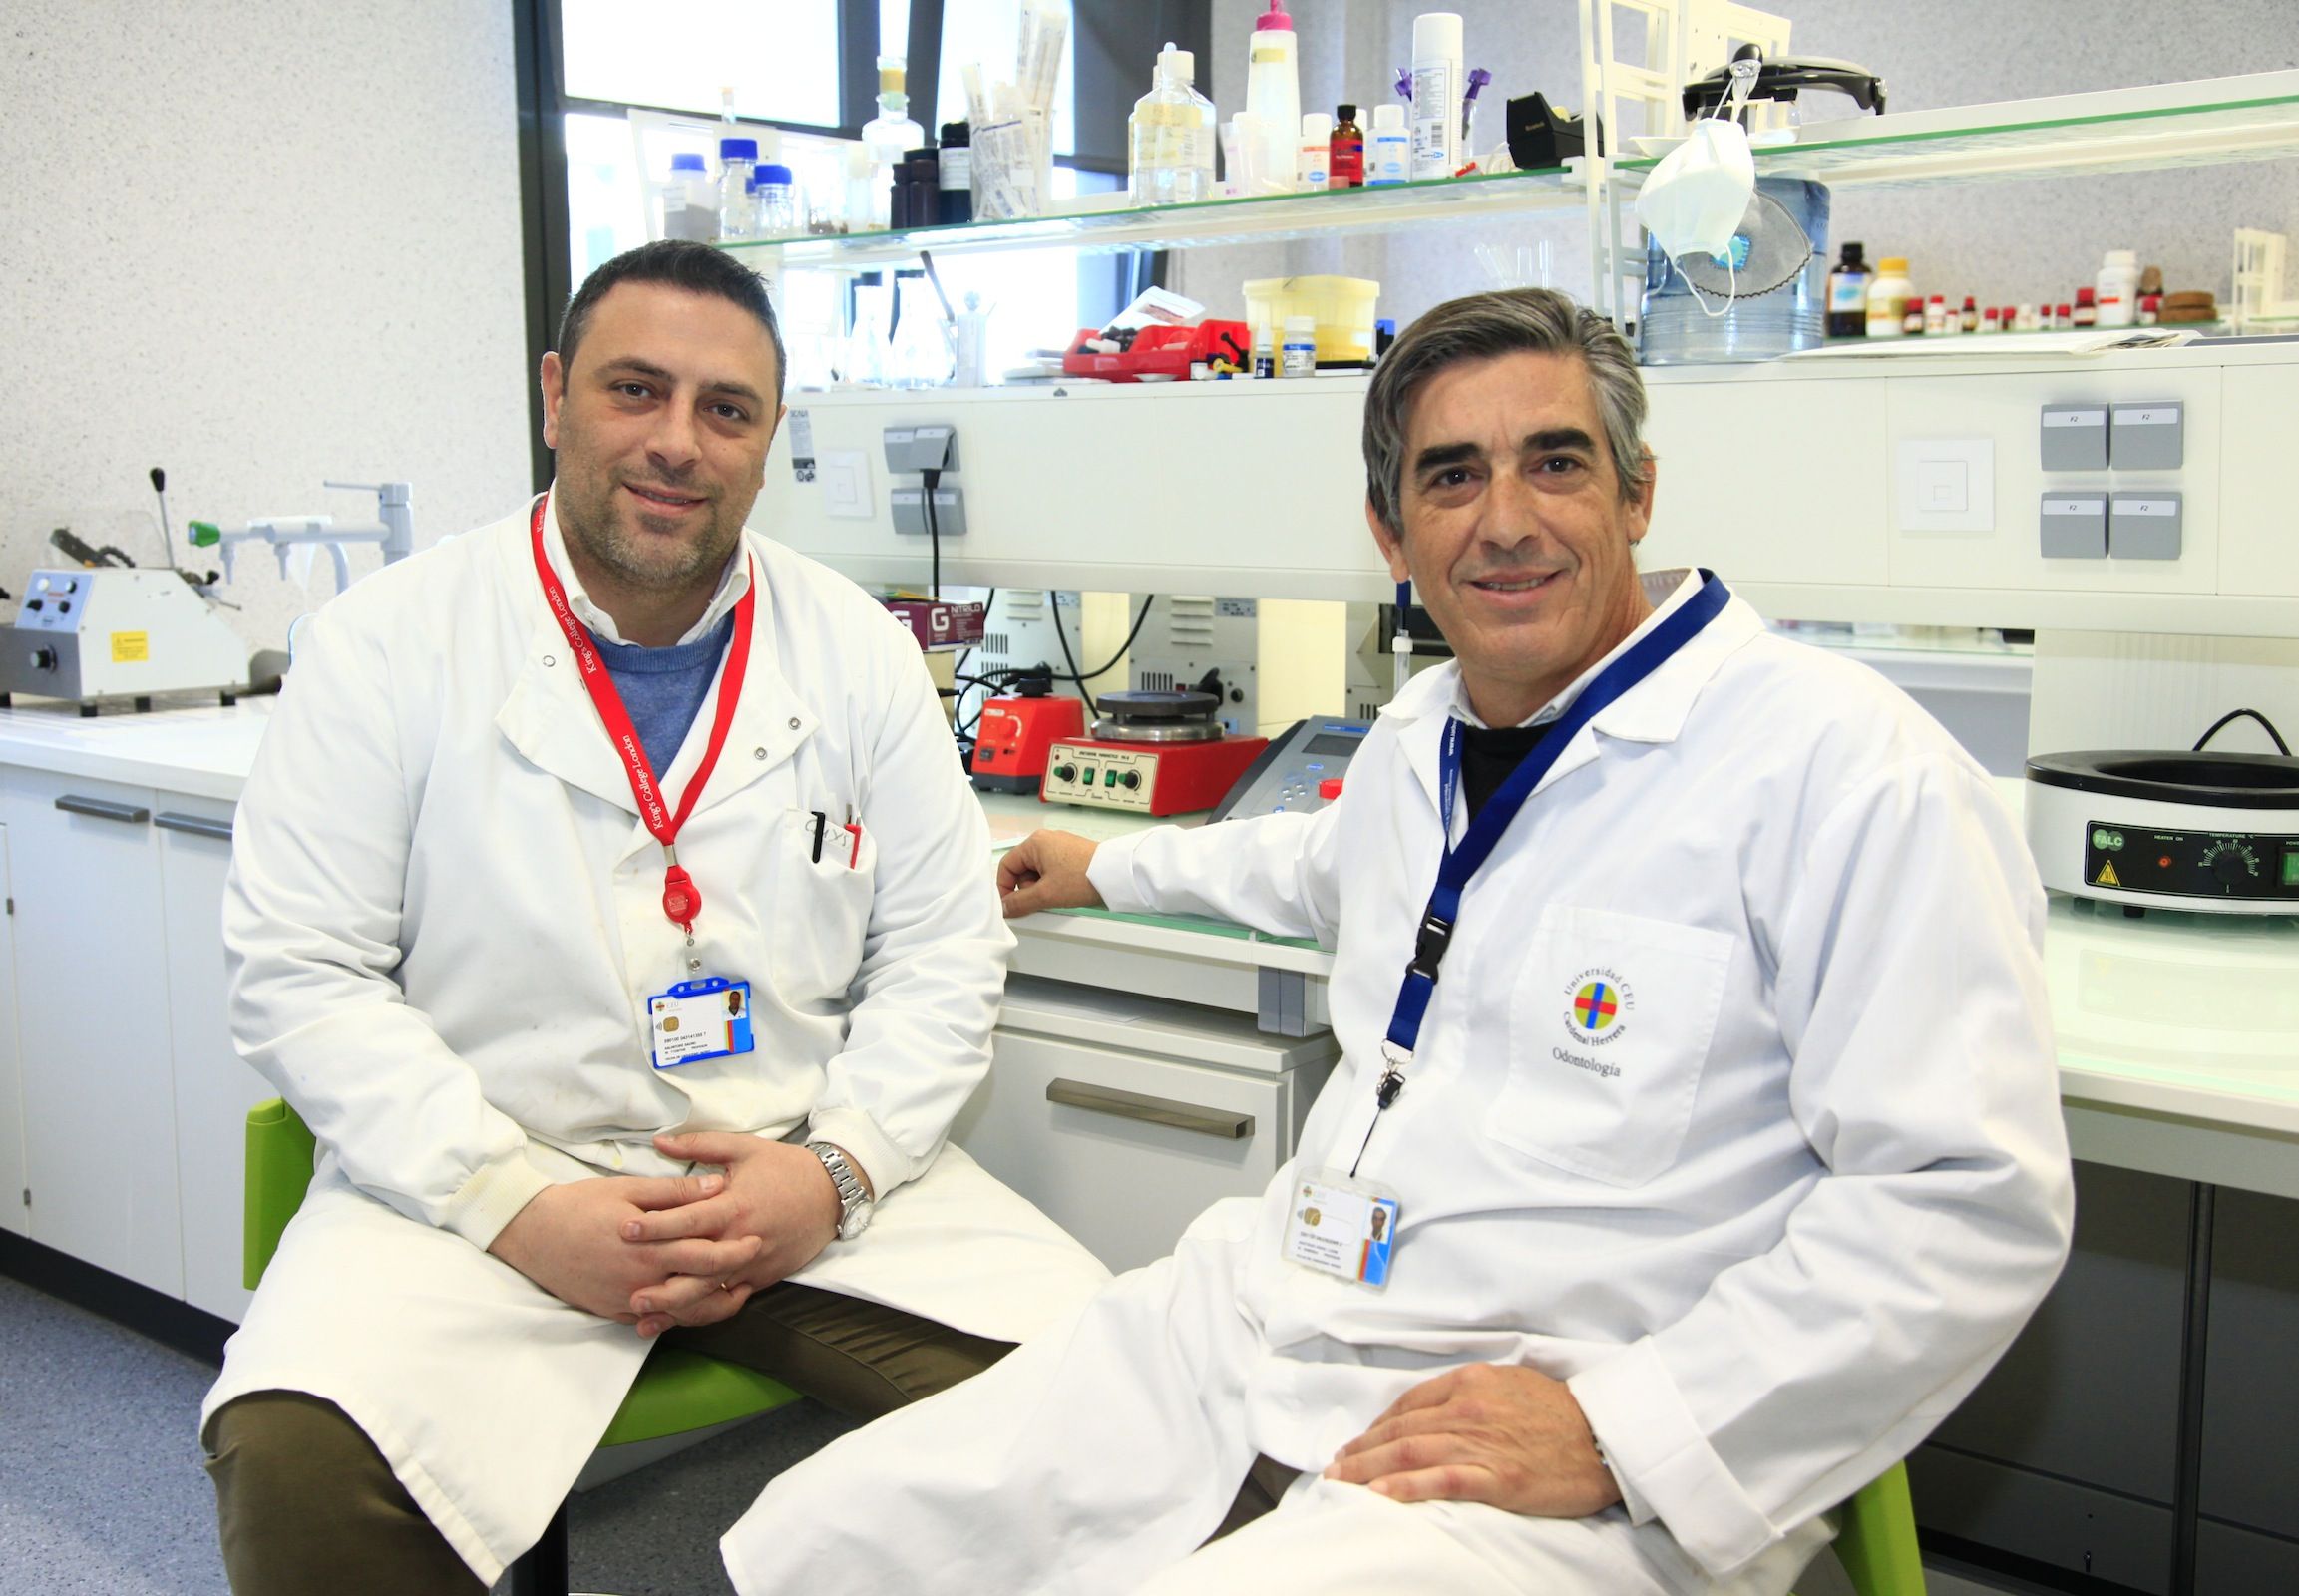 Los profesores de la CEU UCH Salvatore Sauro y Santiago Arias Luxan, autores del estudio publicado por Journal of Dentistry.